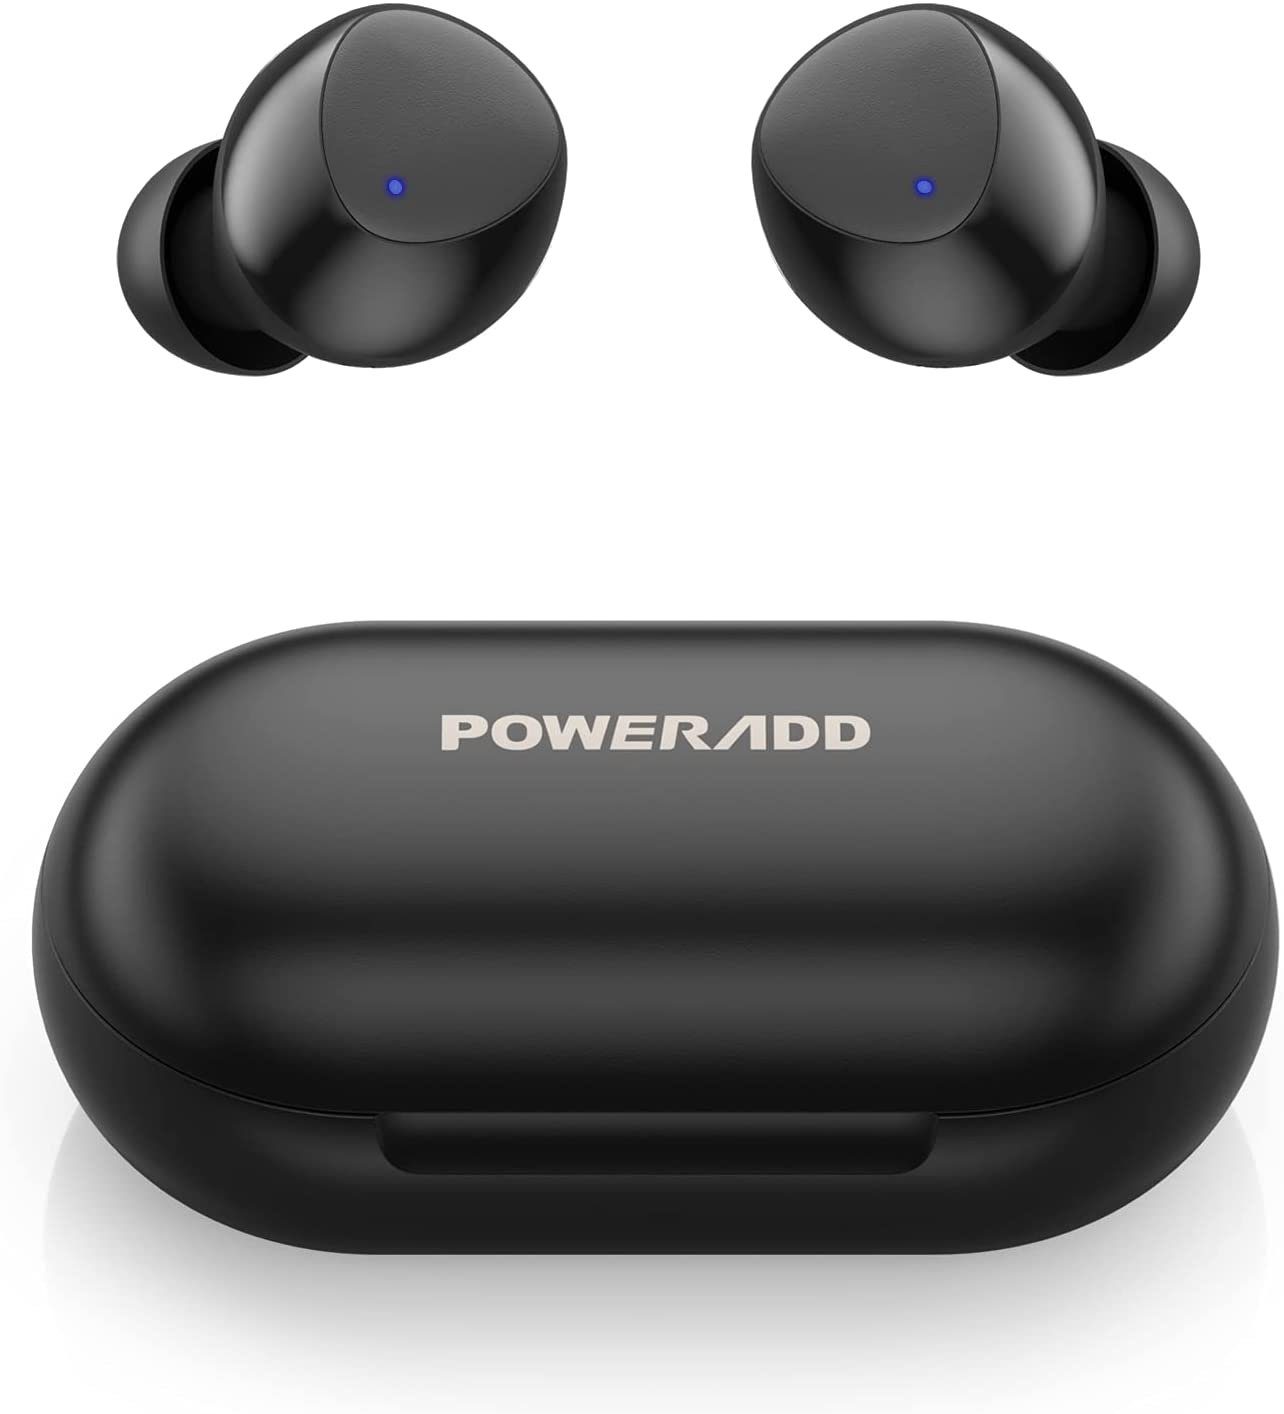 POWERADD S10 wireless In-Ear-Kopfhörer (Bluetooth Kopfhörer, Kopfhörer Kabellos, in Ear, HiFi Stereoklang, kabellose Köpfhörer mit Mikrofon, PX8 Wasserdicht, Bluetooth 5.0, Intelligente Berührung, 20 Std. Laufzeit)